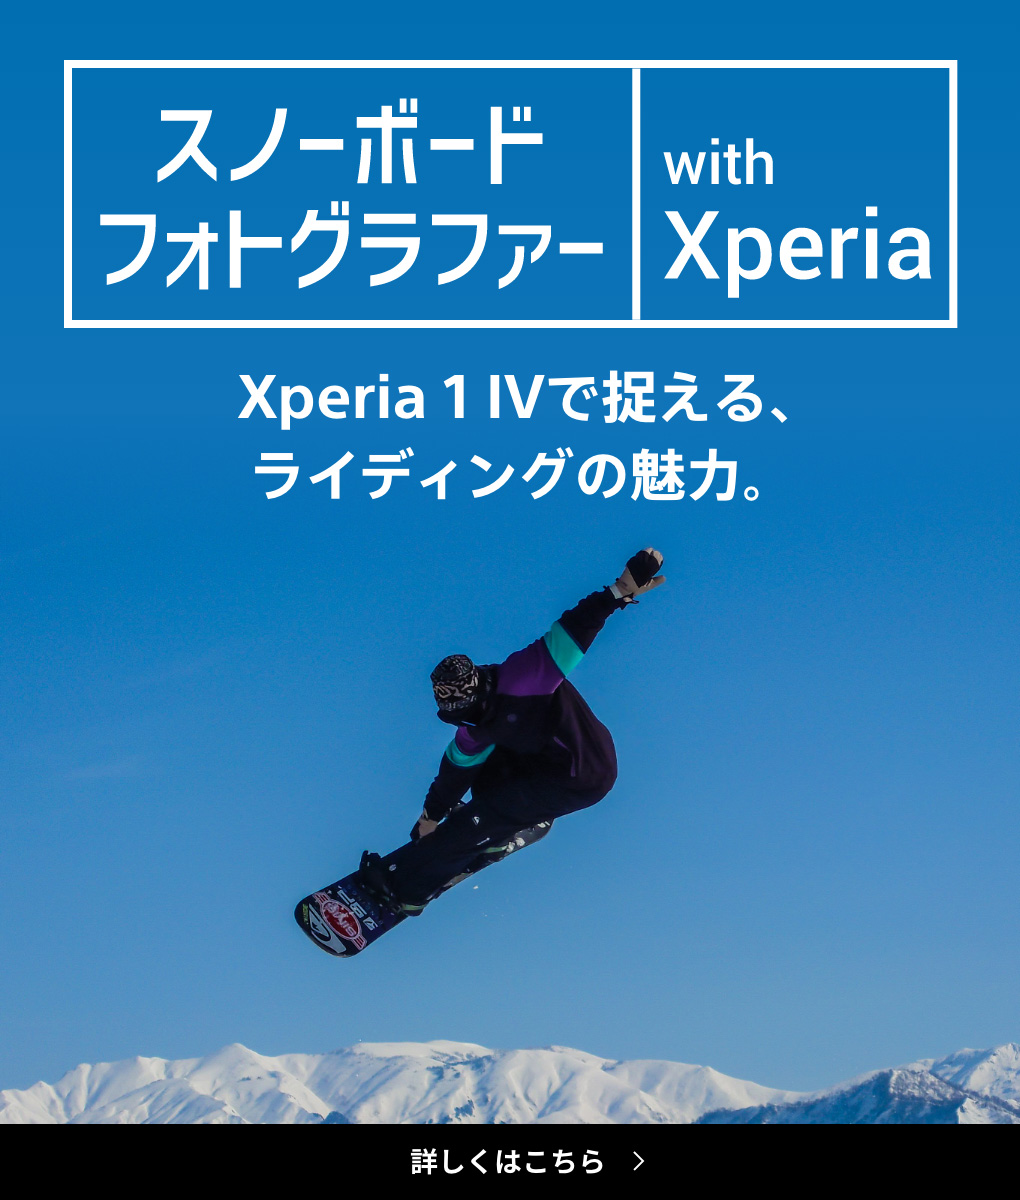 スノーボードフォトグラファー with Xperia（エクスペリア） Xperia 1 IV（エクスペリア ワン マークフォー）で捉える、ライディングの魅力。